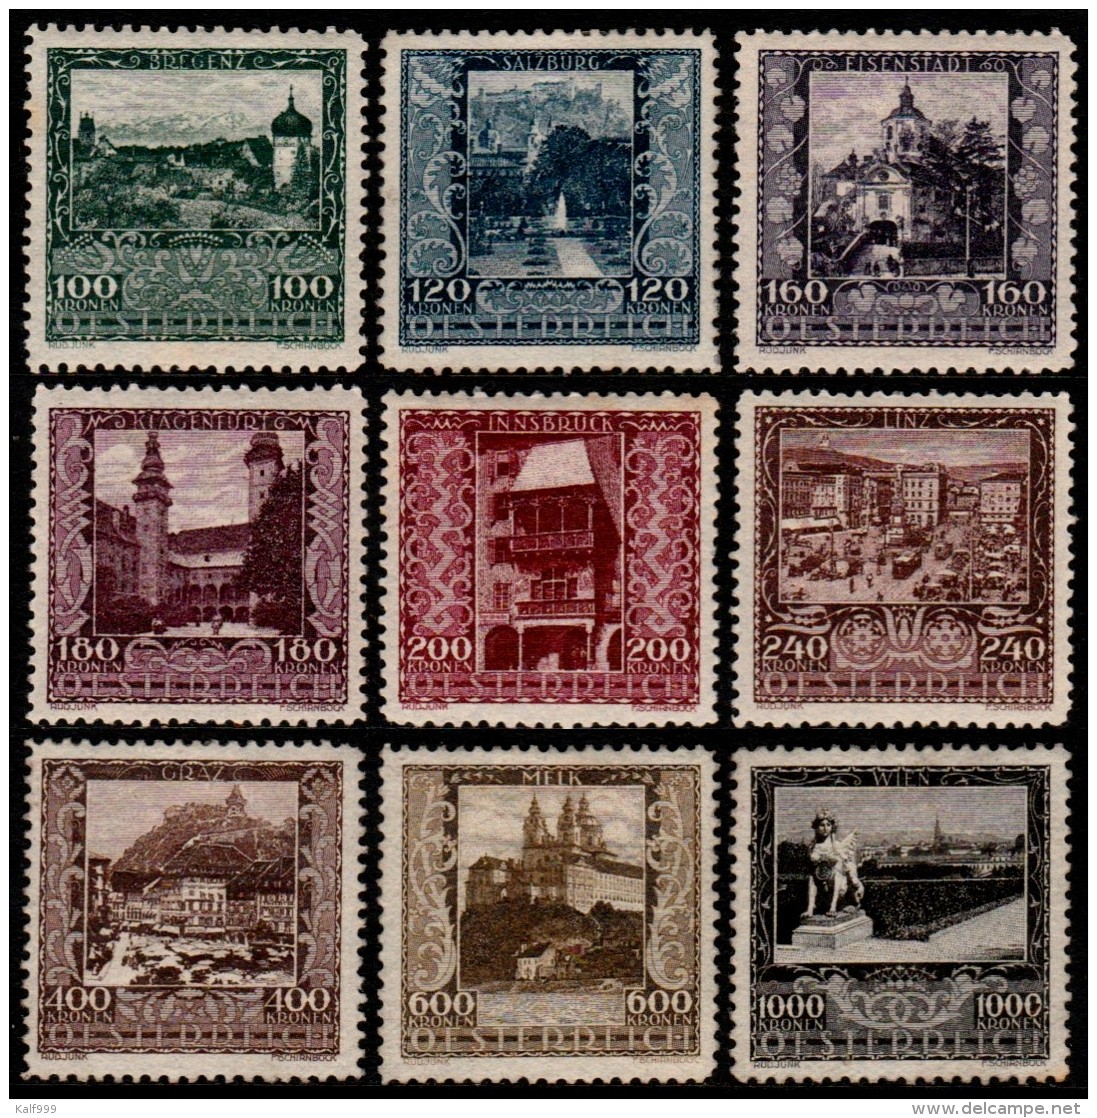 ~~~ Osterreich Austria 1923 - City Views  - Mi. 433/441 * MH  ~~~ - Unused Stamps